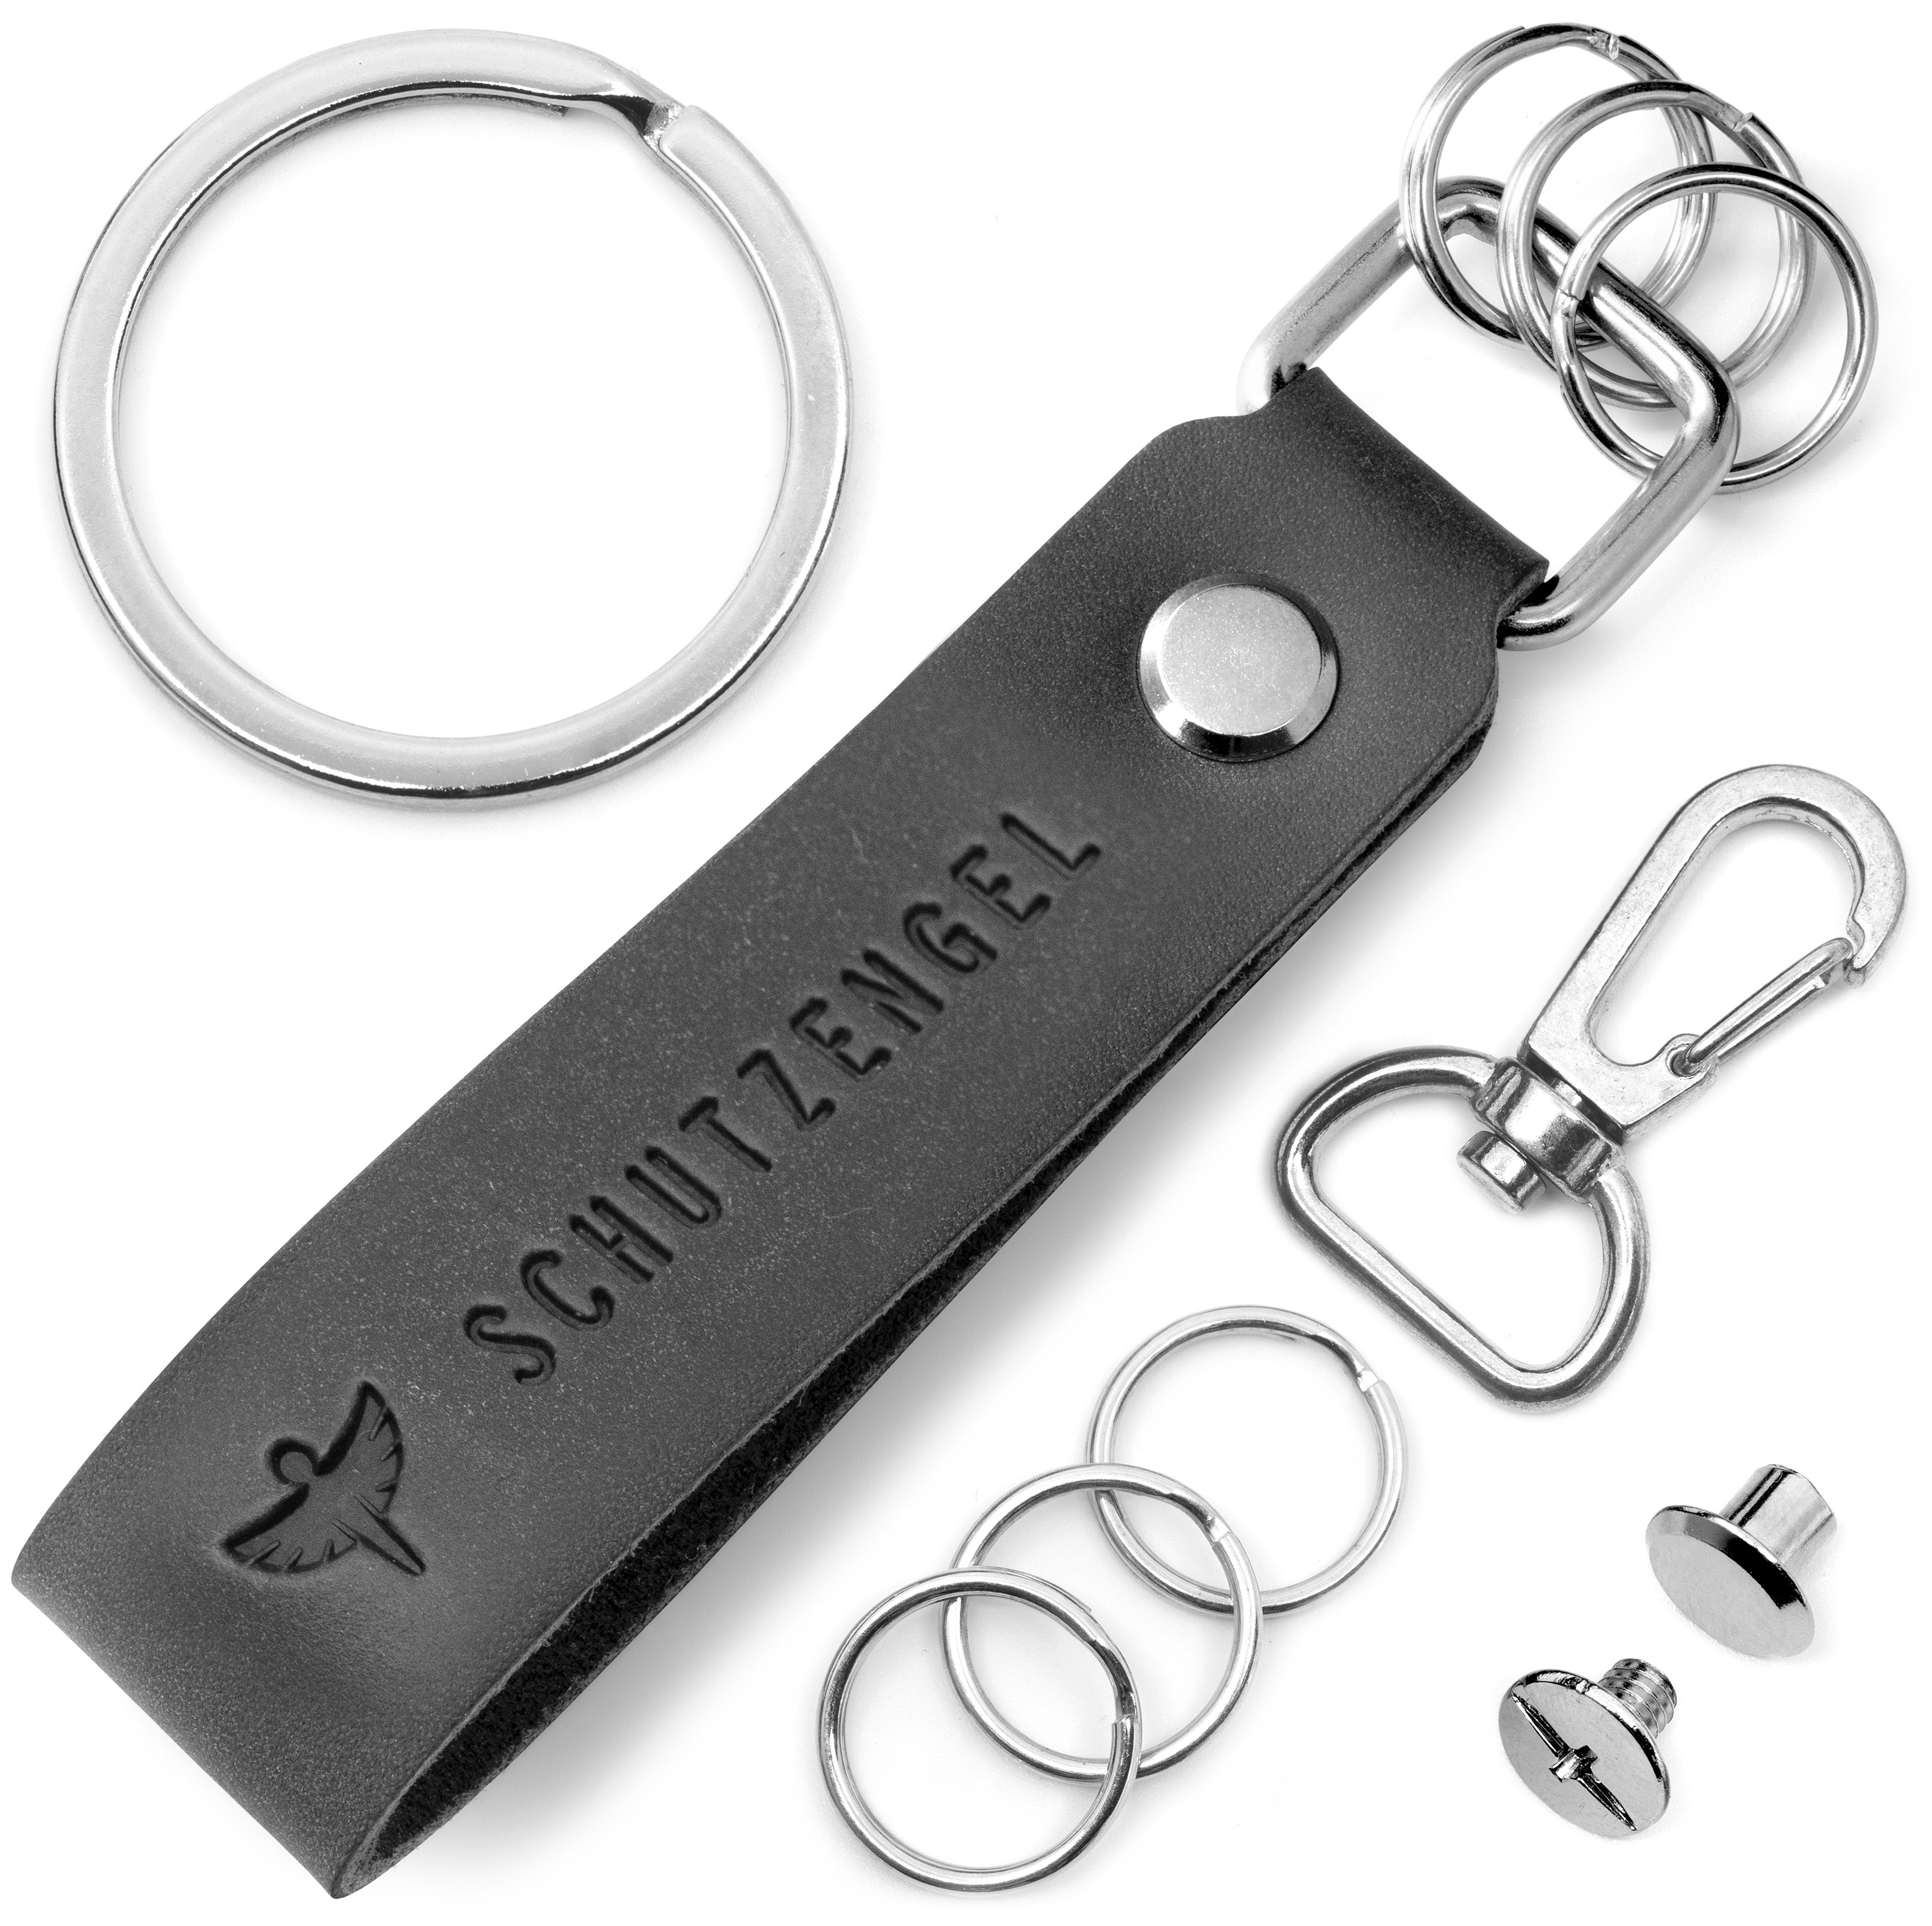 "Schutzengel" Anhänger - Schwarz wechselbarem mit Leder Gravur Schlüsselring FABACH Schlüsselanhänger